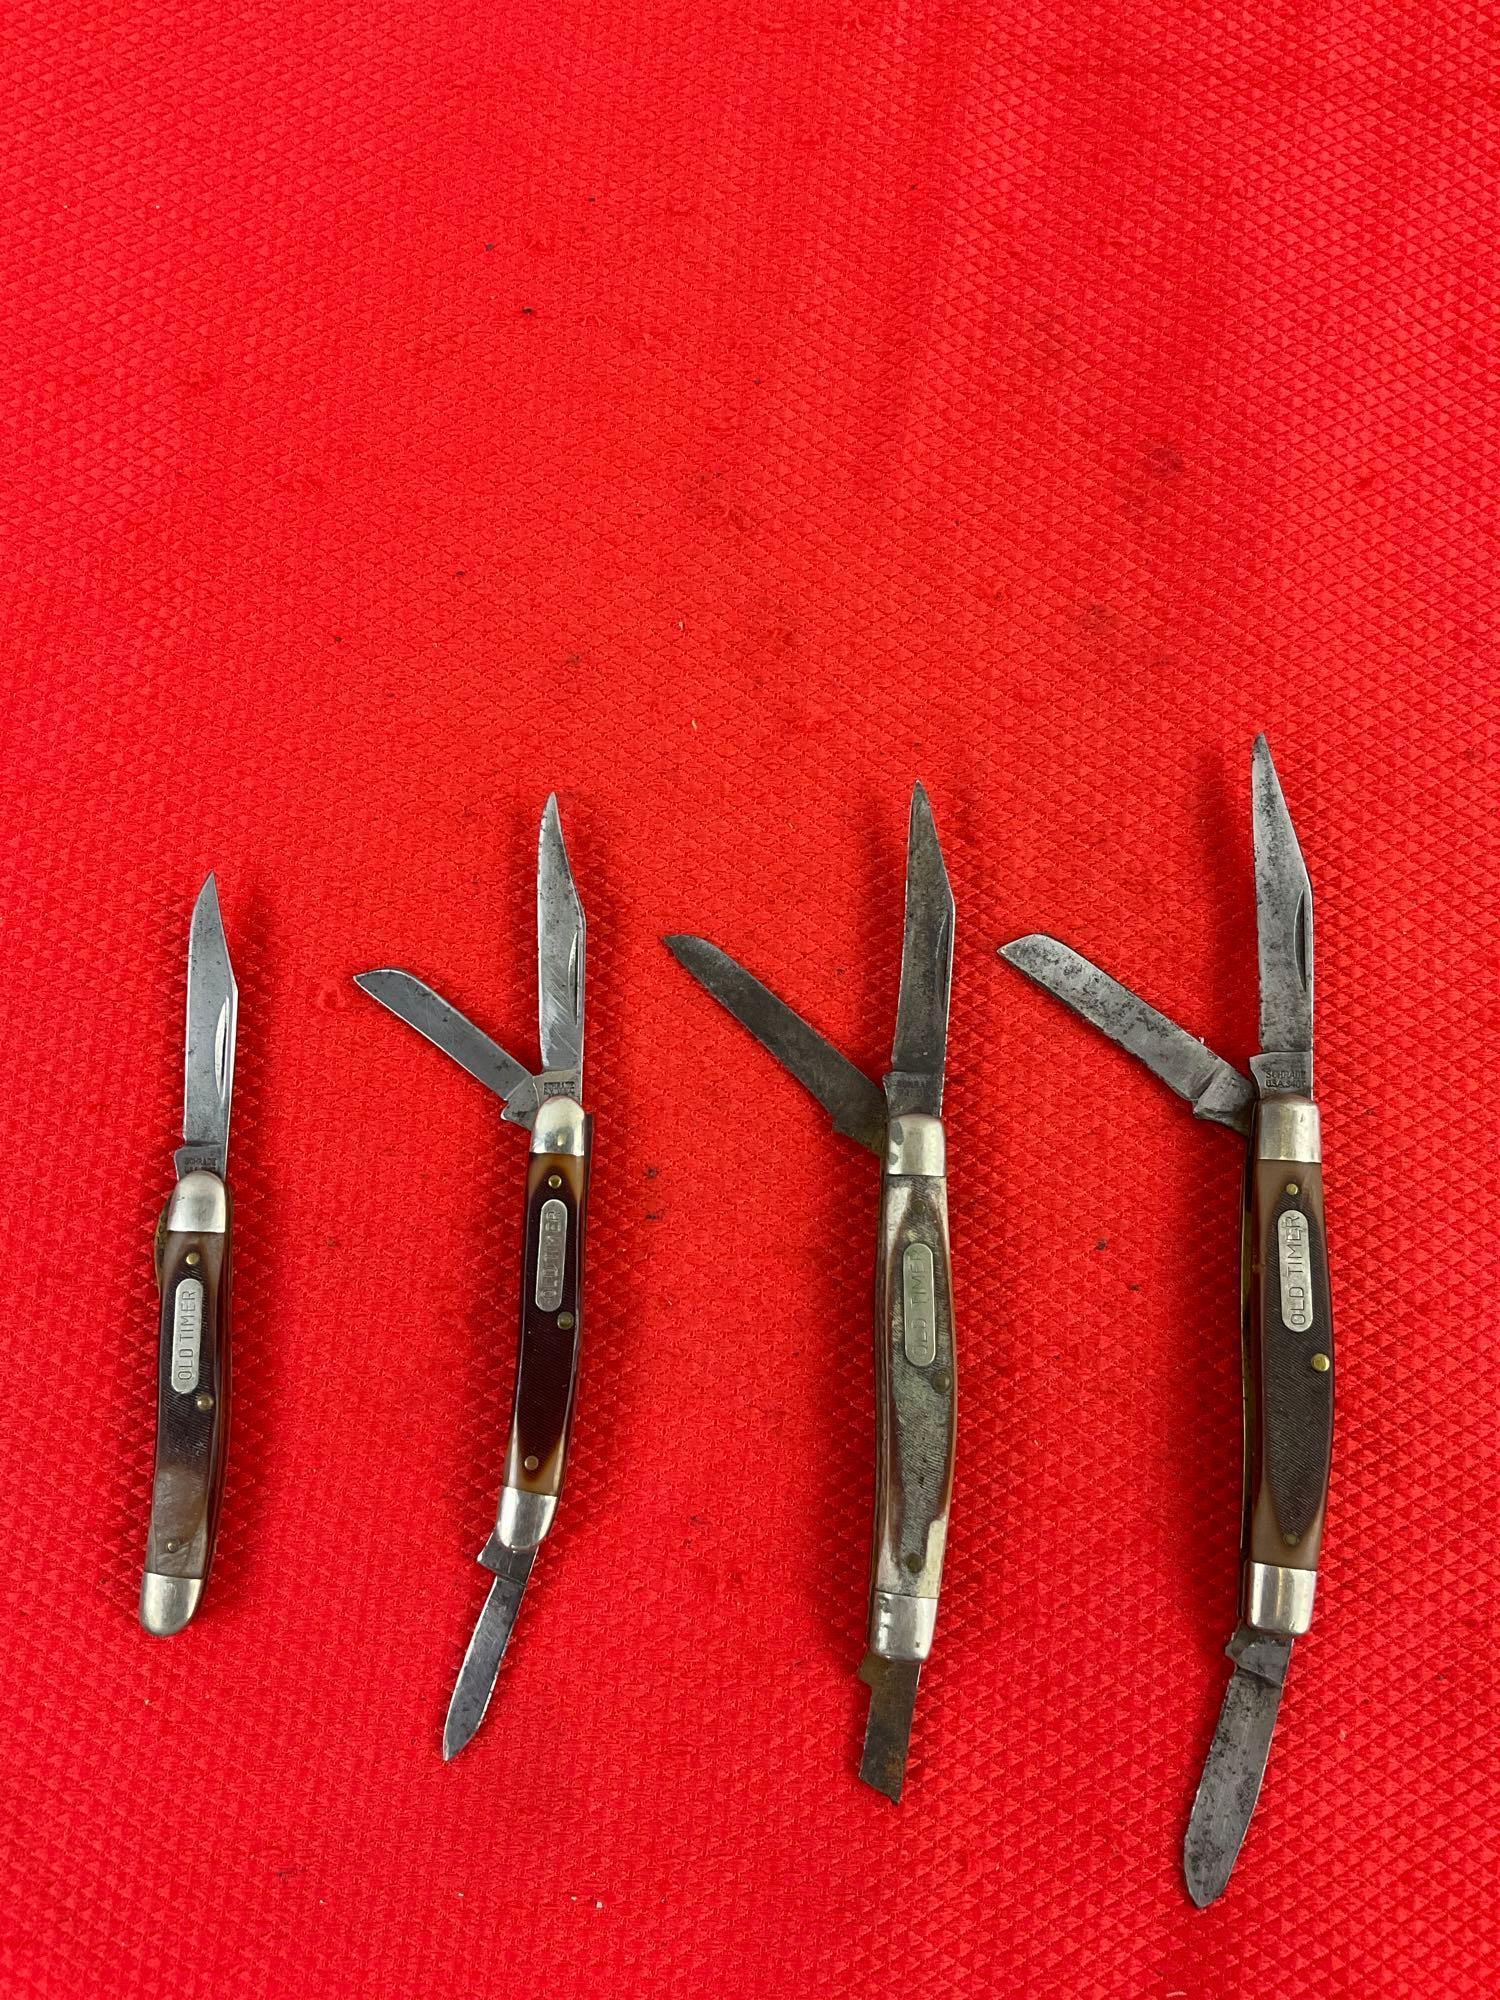 4 pcs Vintage Schrade Old Timer Folding Blade Pocket Knives Models 18OT, 108OT, 2x 34OT. As Is. See